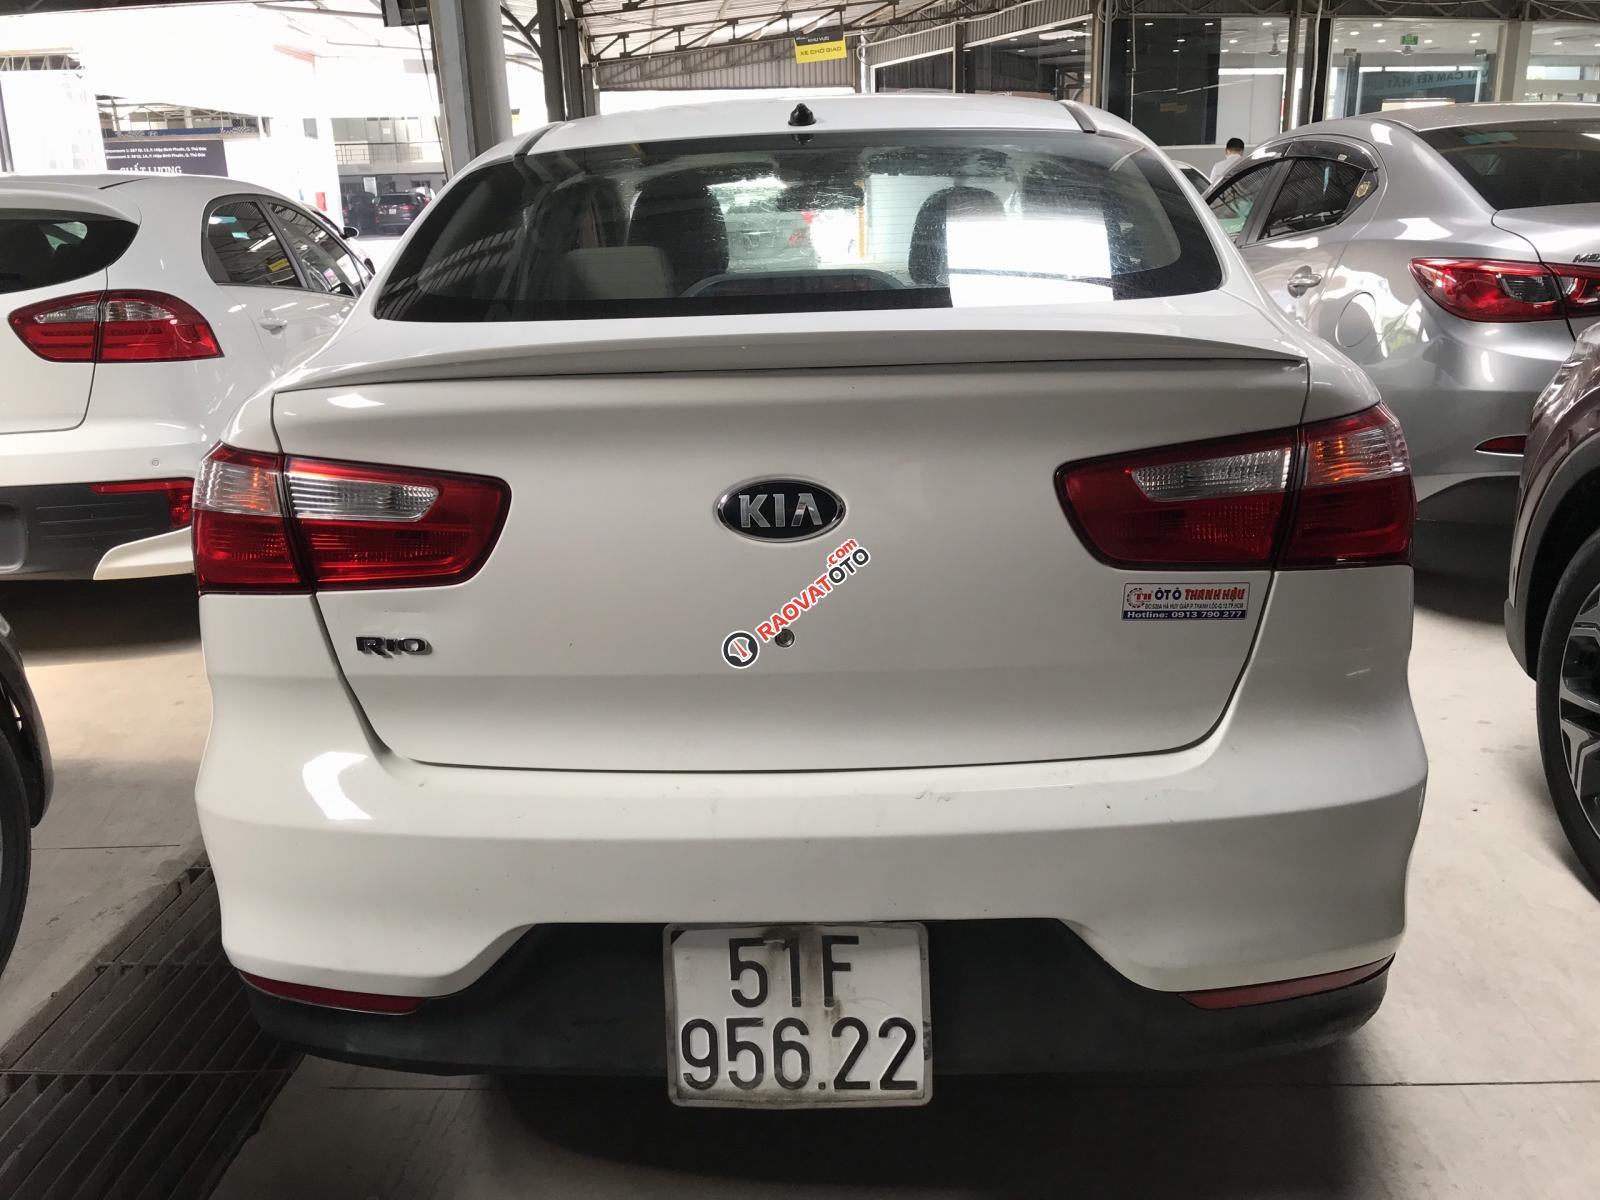 Bán Kia Rio sedan 1.4MT màu trắng, số sàn nhập Hàn Quốc 2016, biển Sài Gòn 1 chủ-5